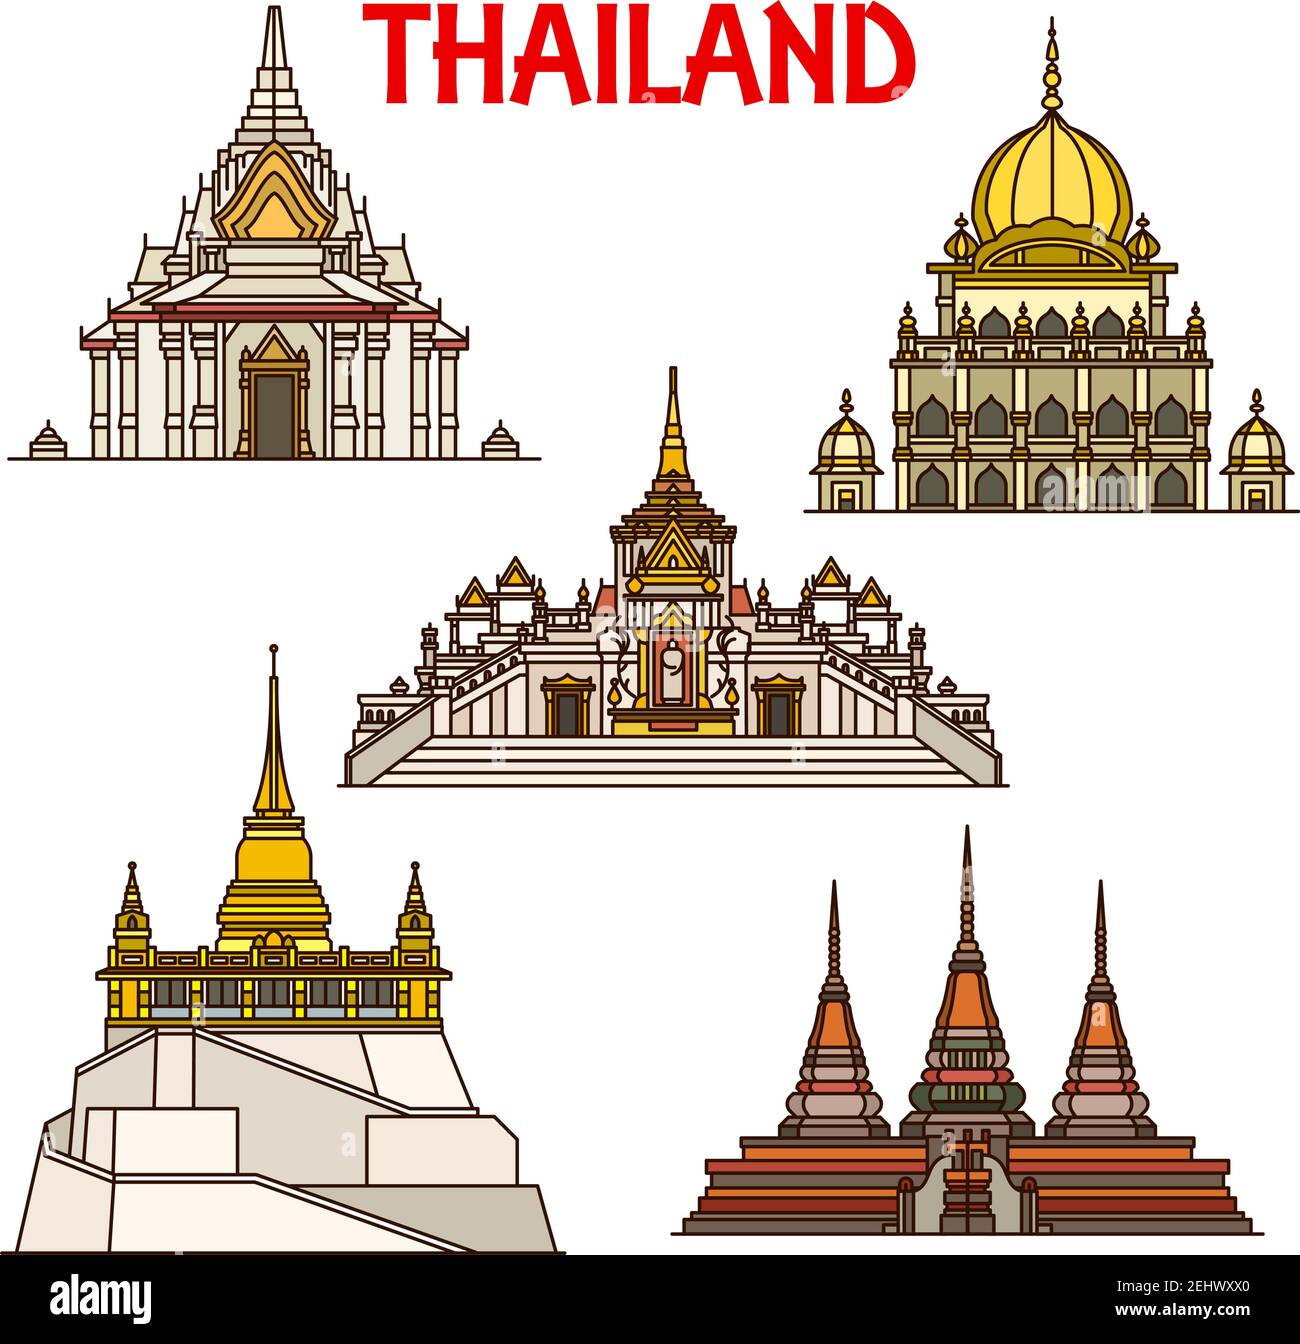 Monuments thaïlandais de voyage de Bangkok bâtiments symboles vectoriels. Lak mueang ou temple du pilier de la ville, temple sikh, temples bouddhistes Wat Pho avec Bouddha couché Illustration de Vecteur